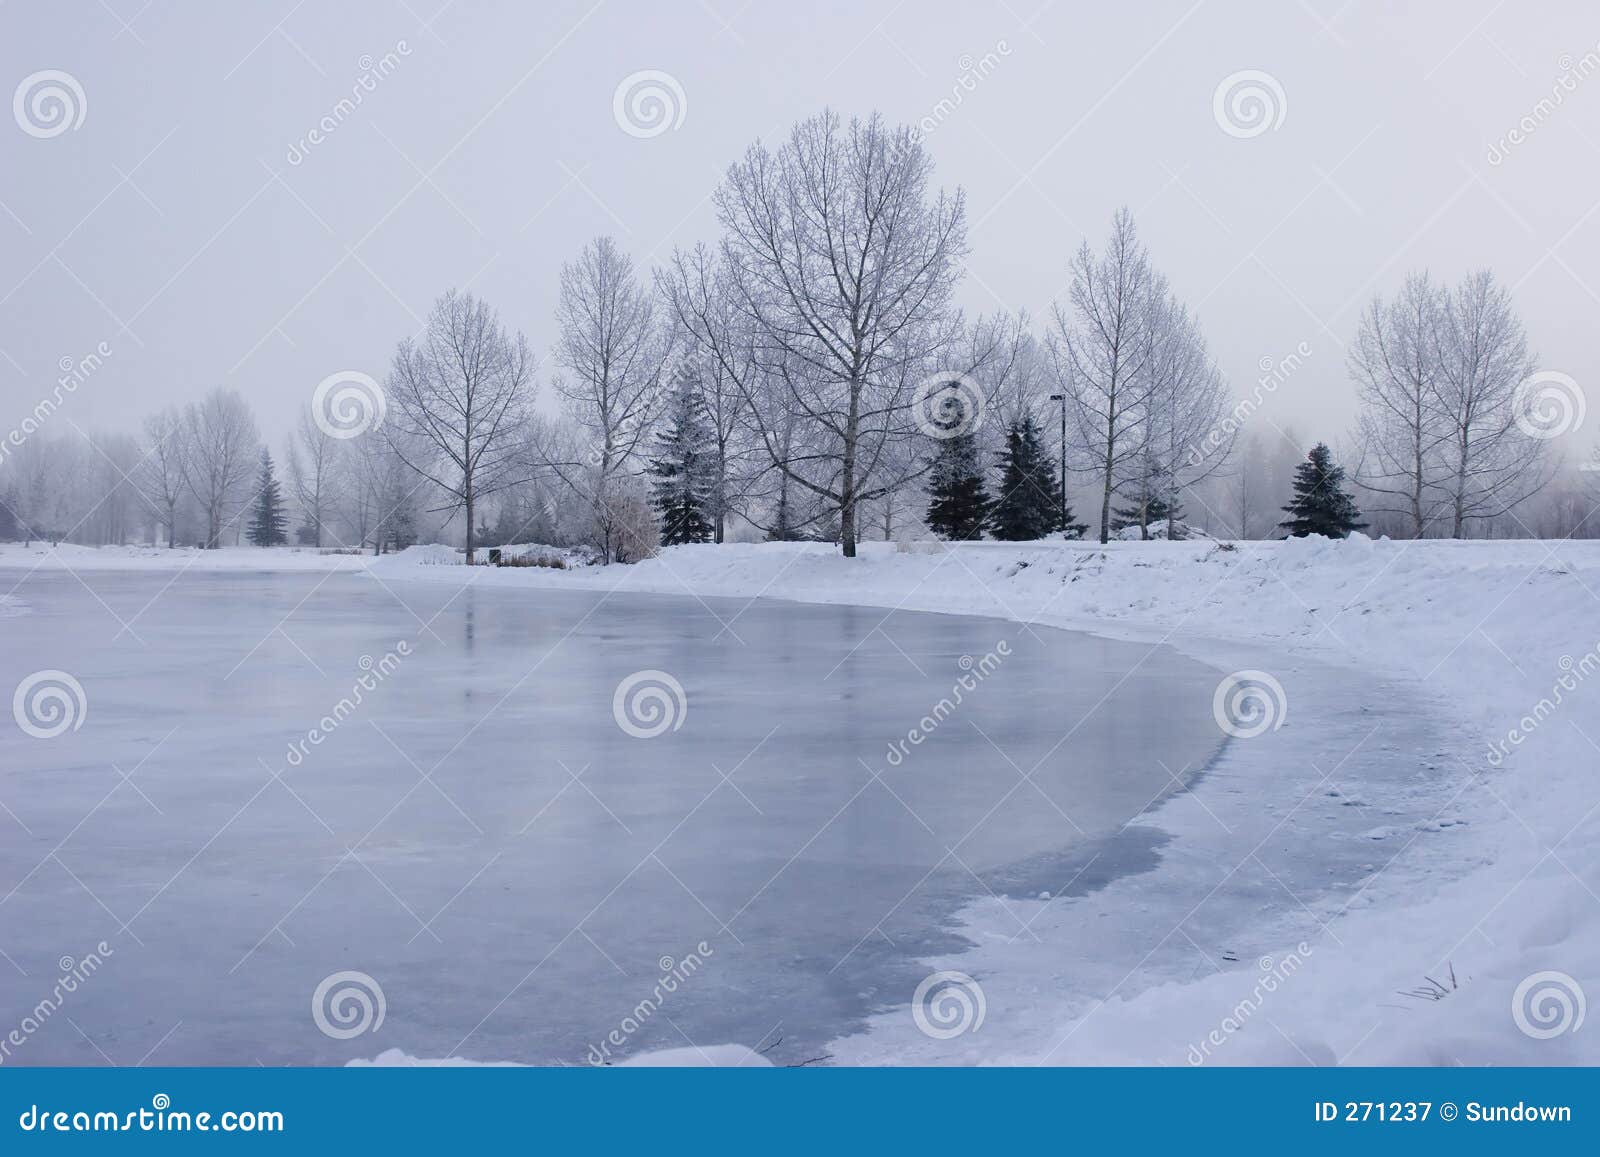 frozen pond